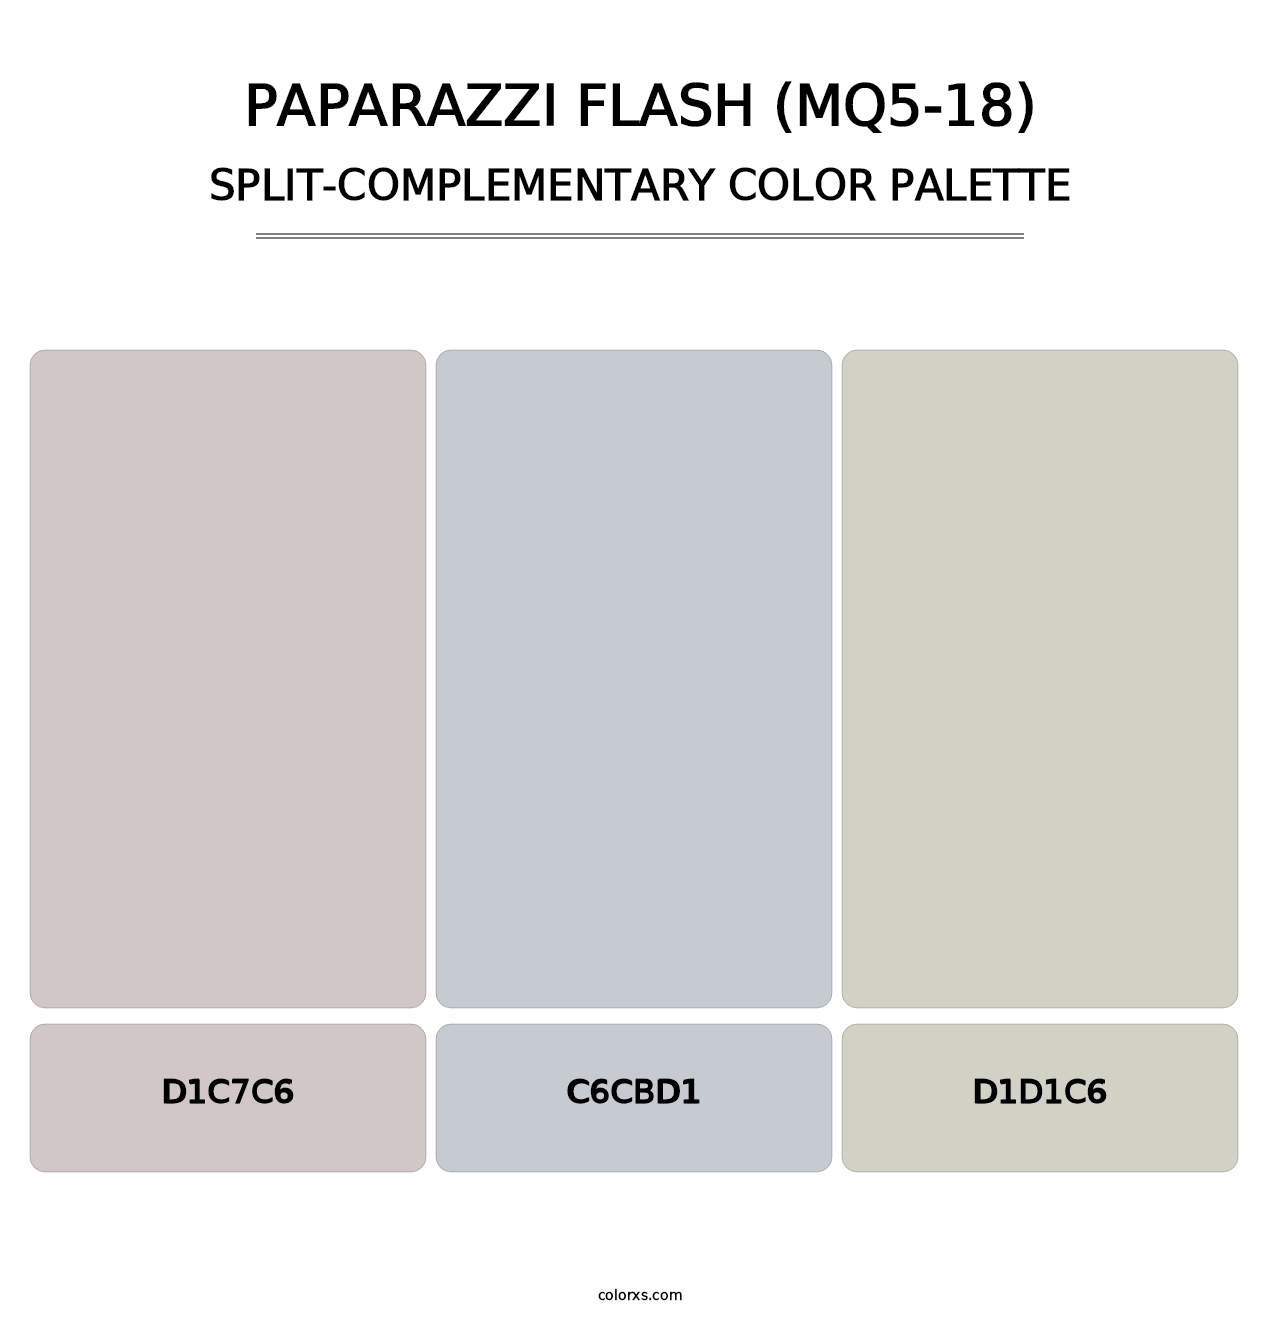 Paparazzi Flash (MQ5-18) - Split-Complementary Color Palette